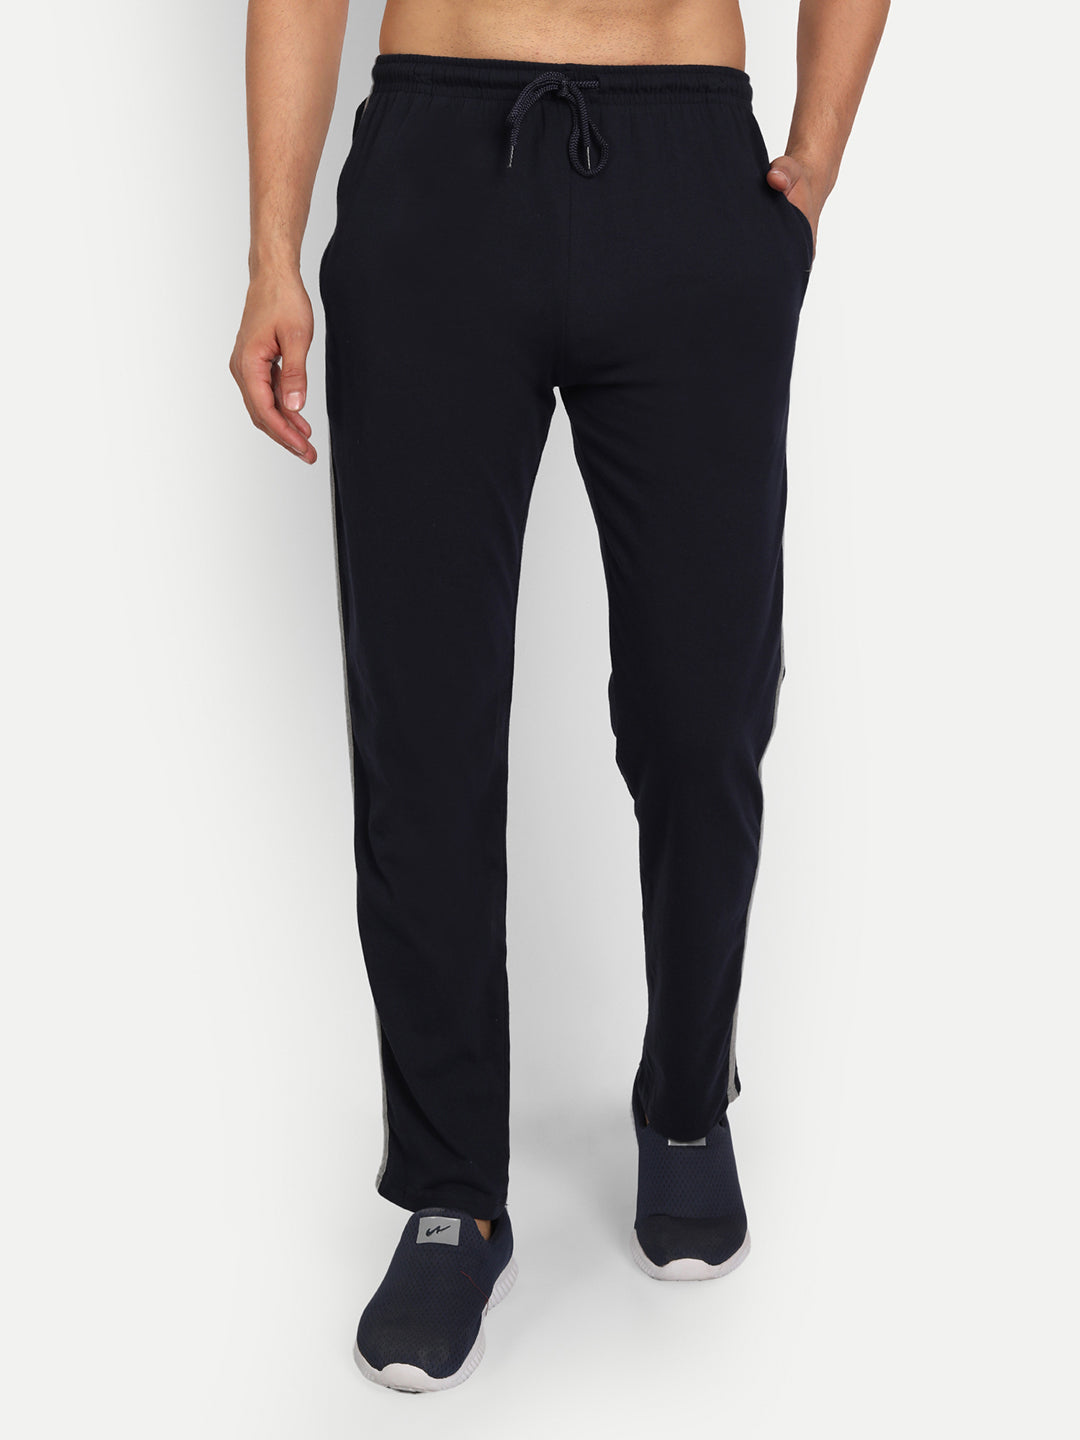 CELINE 640$ Grey Cotton Track Pants - Logo Embroidery | eBay